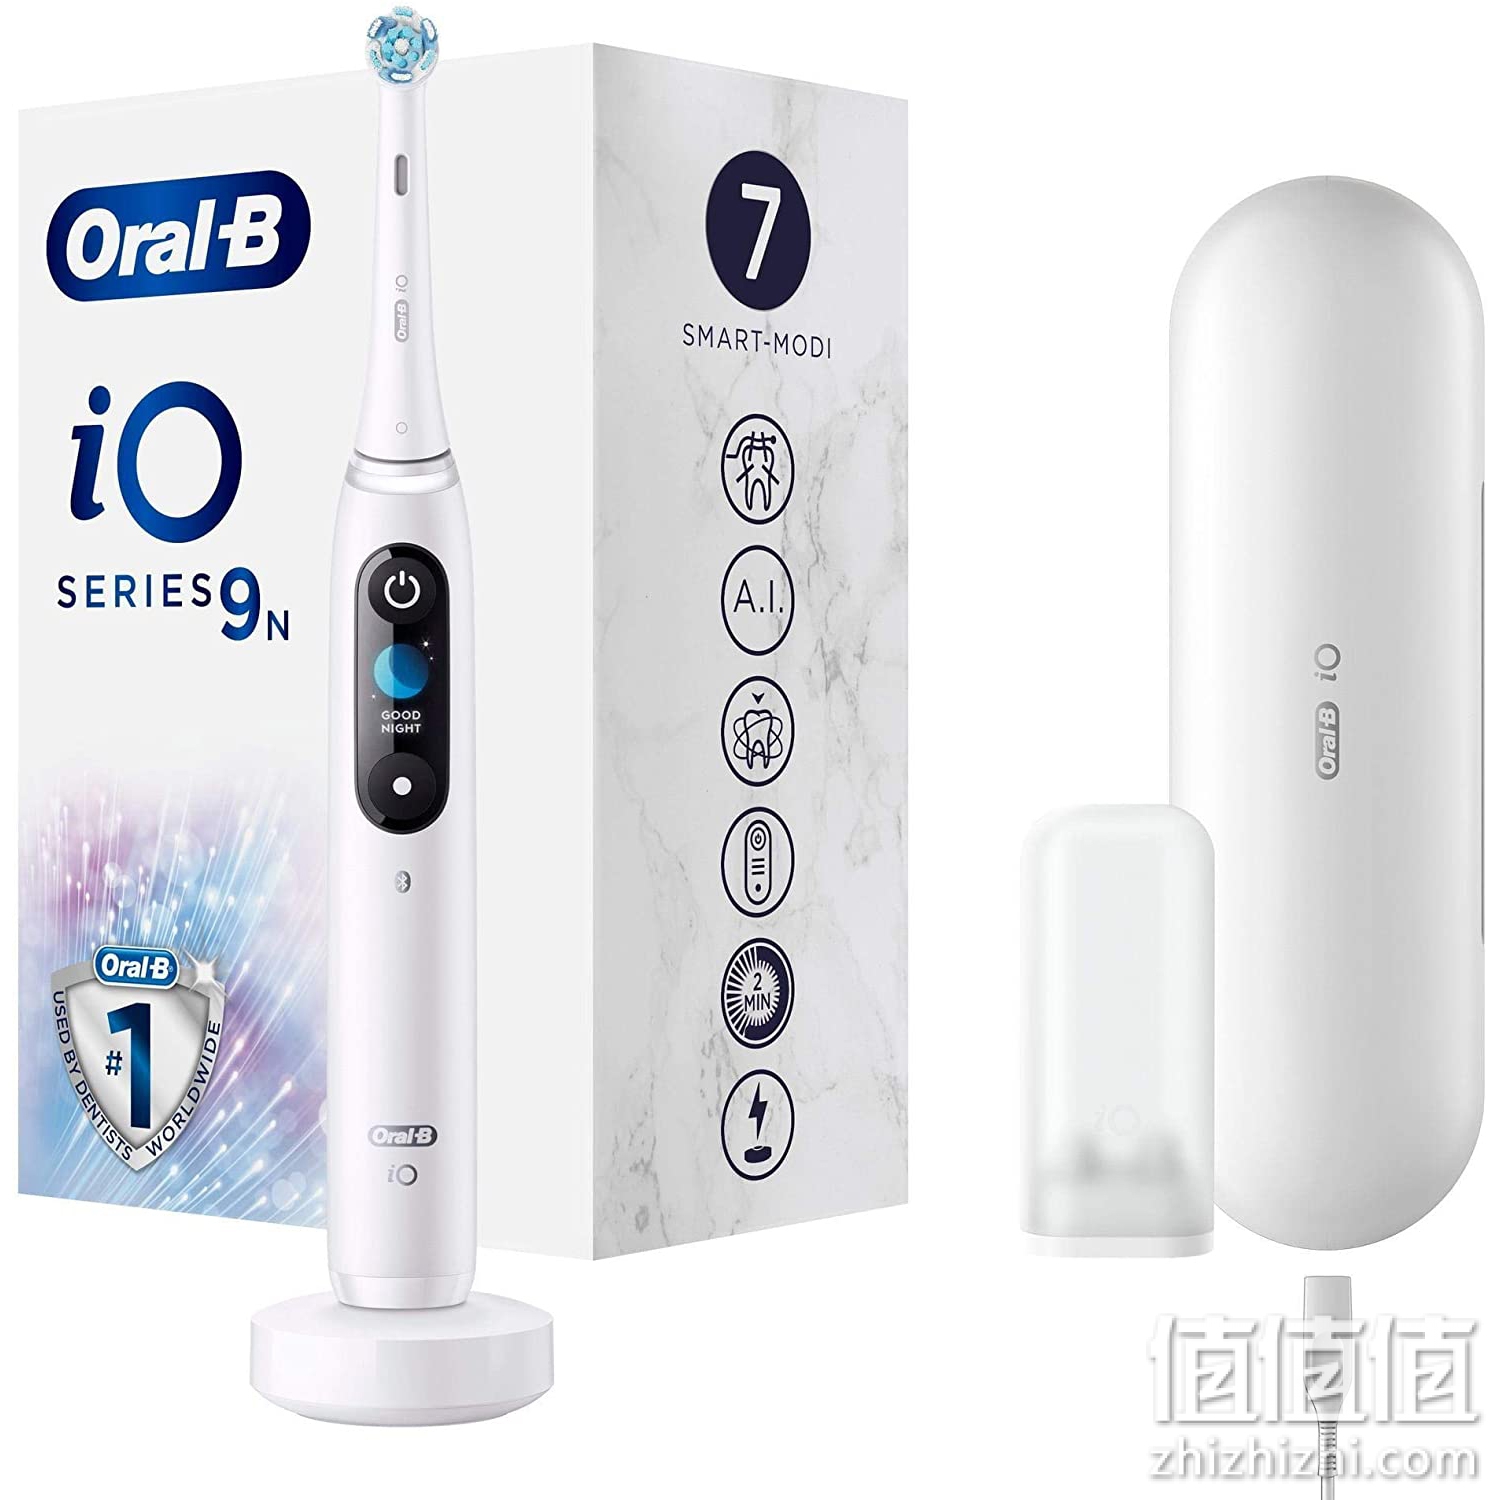 Oral-B 欧乐B iO 9 电动牙刷 采用革命性的磁性技术和微振动 7个清洁程序 3D齿表面分析 彩色显示屏和充电盒 白色